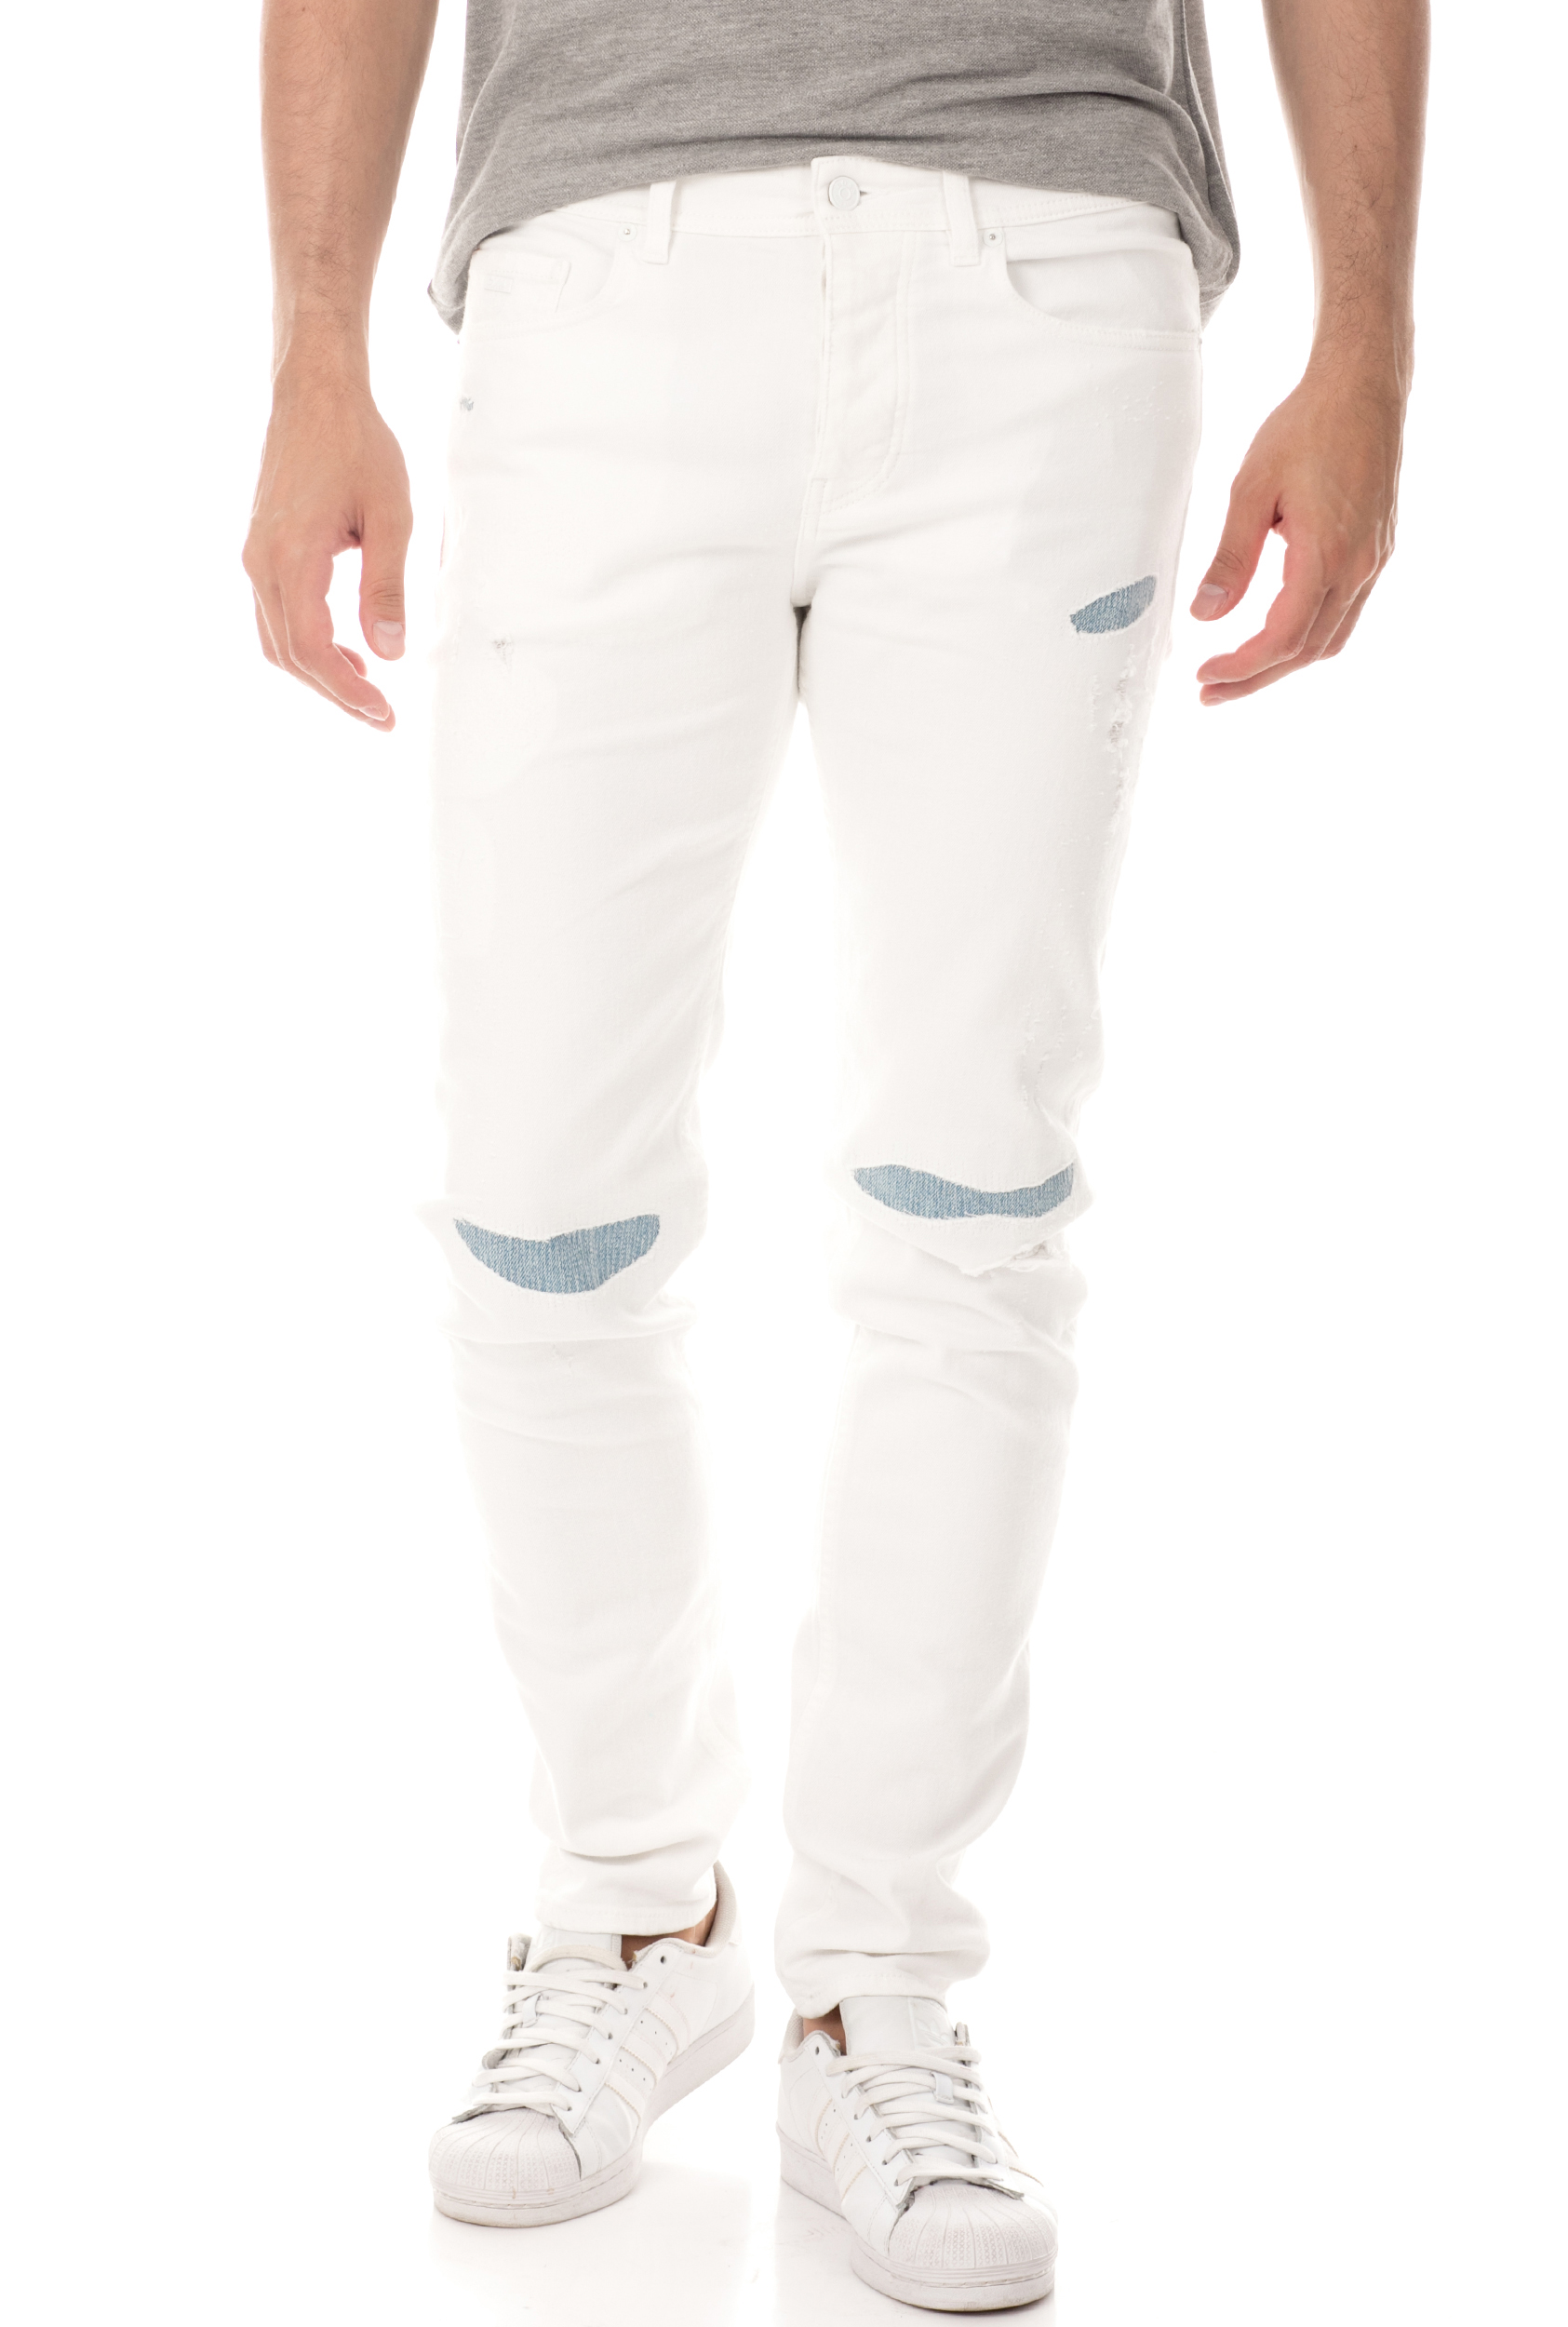 Ανδρικά/Ρούχα/Τζίν/Skinny BOSS - Ανδρικό jean παντελόνι BOSS Taber BC-C λευκό